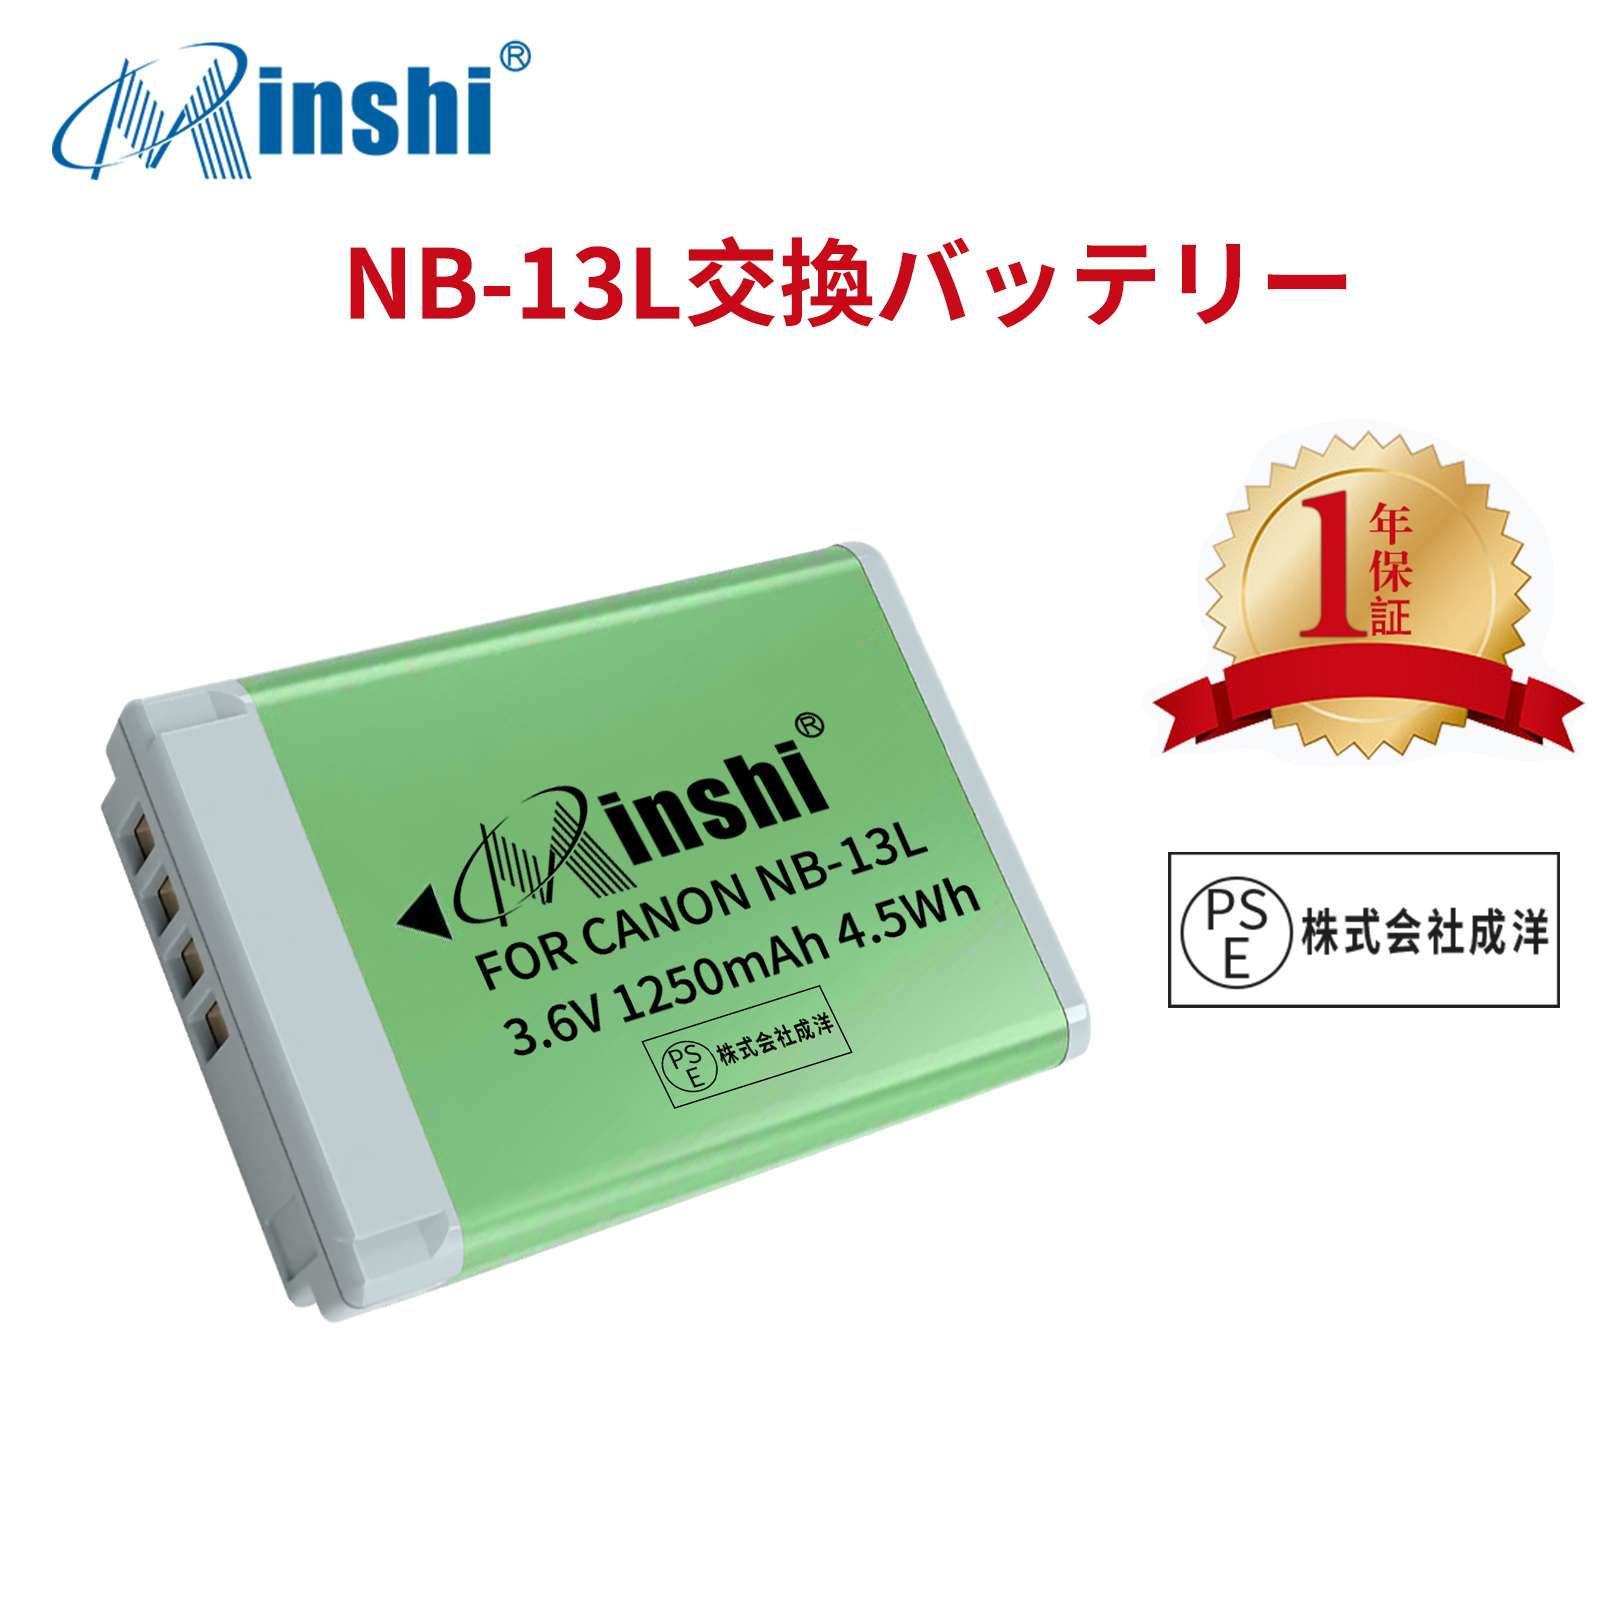 【1年保証】minshi CANONキヤノン NB-13L【1250mAh 3.6V】PSE認定済 高品質G9X G7X G5X PowerShot互換バッテリーPHB